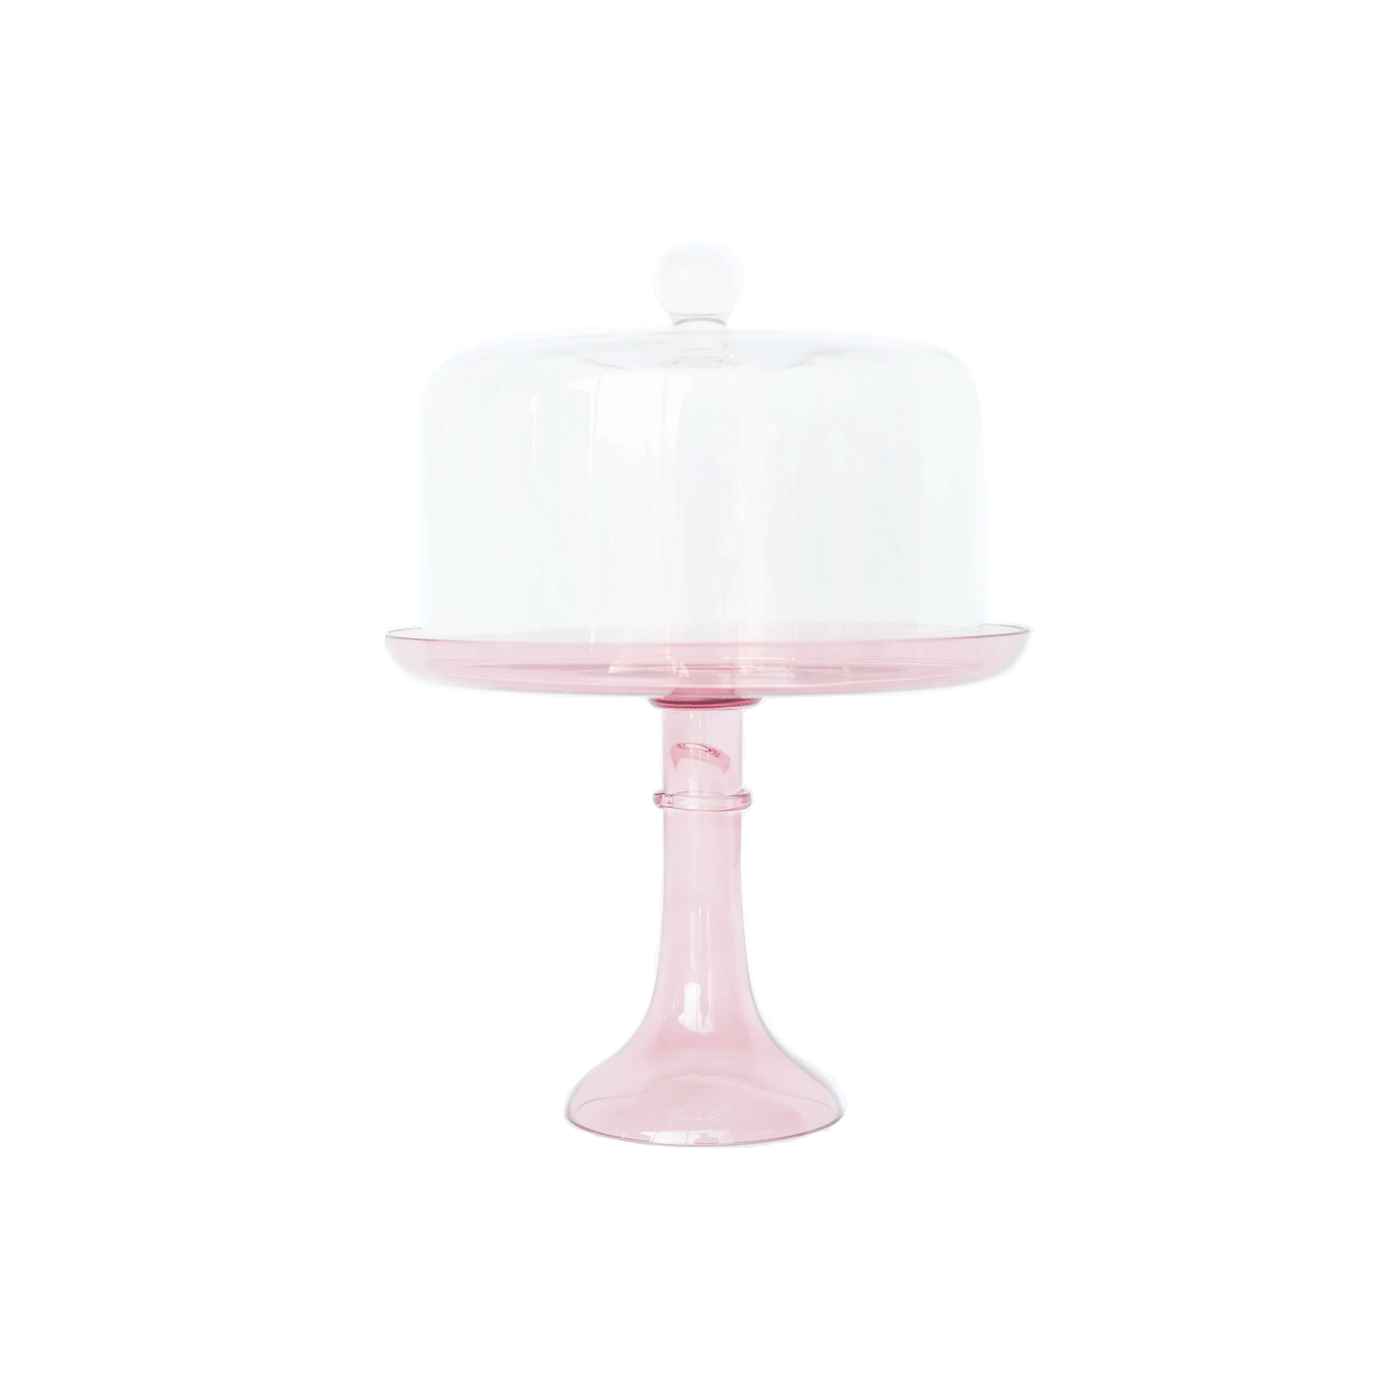 Estelle Colored Glass Cake Stand Dome